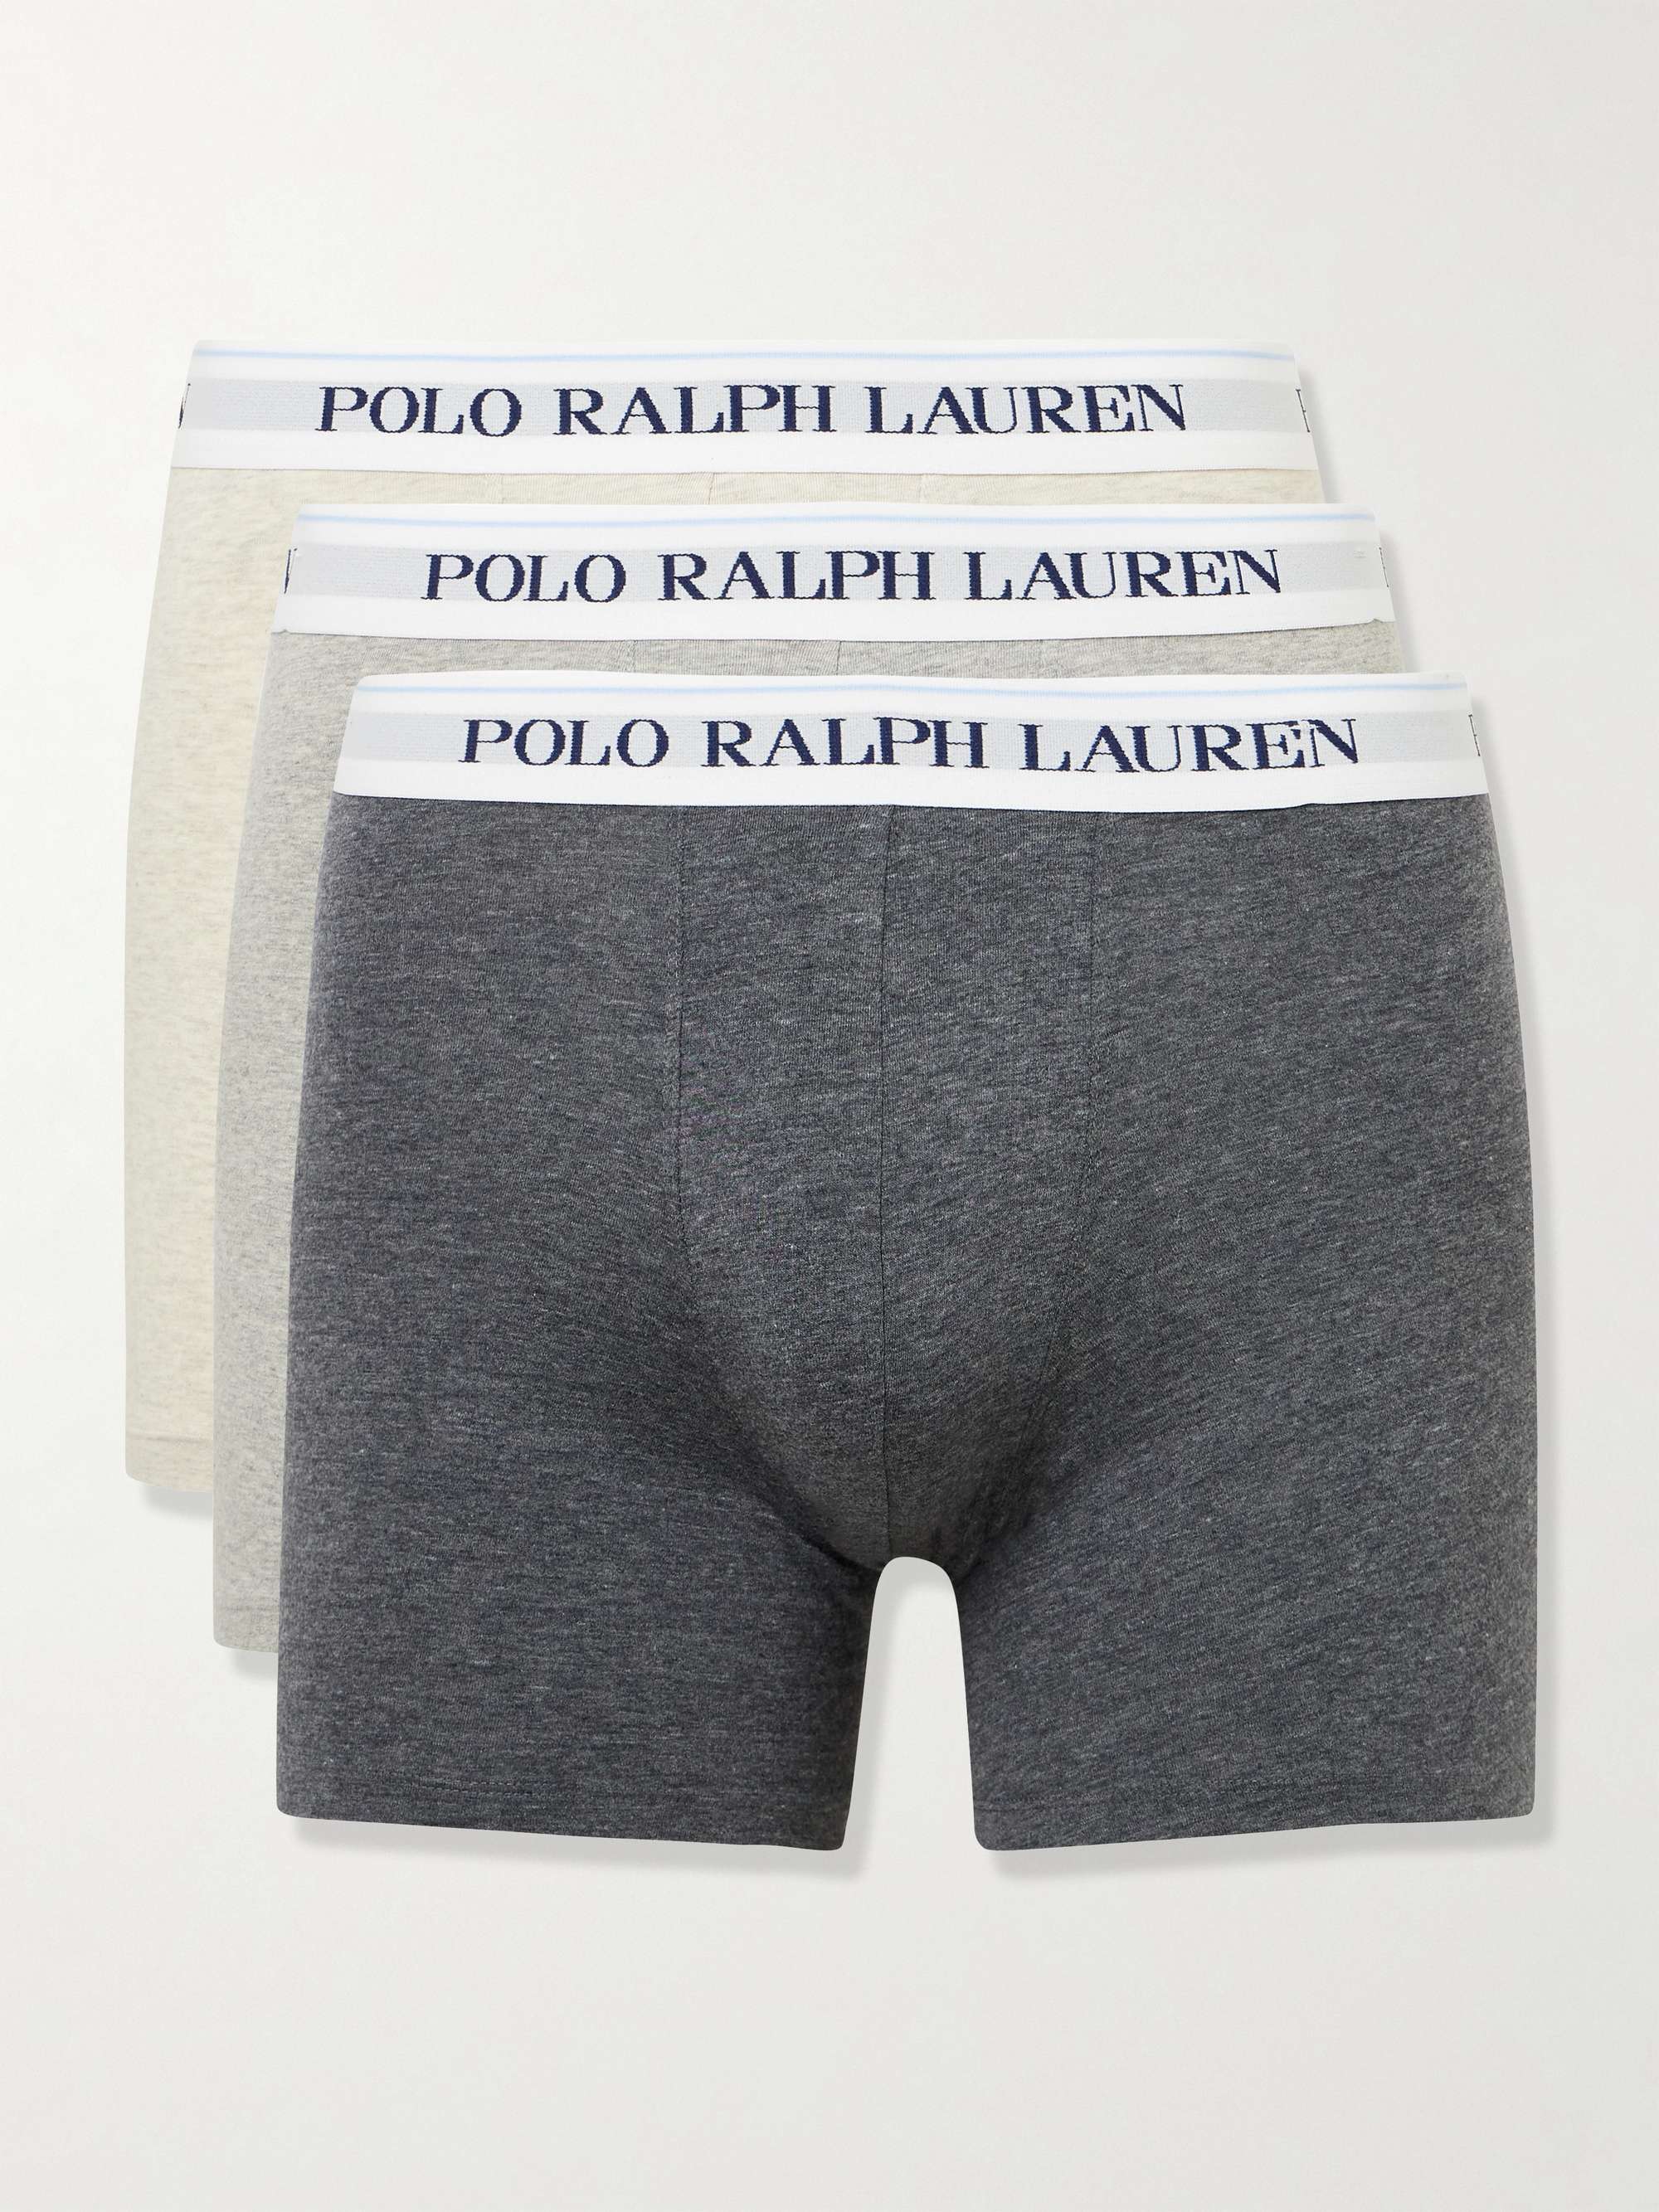 POLO RALPH LAUREN - Men's 3-pack logo briefs 